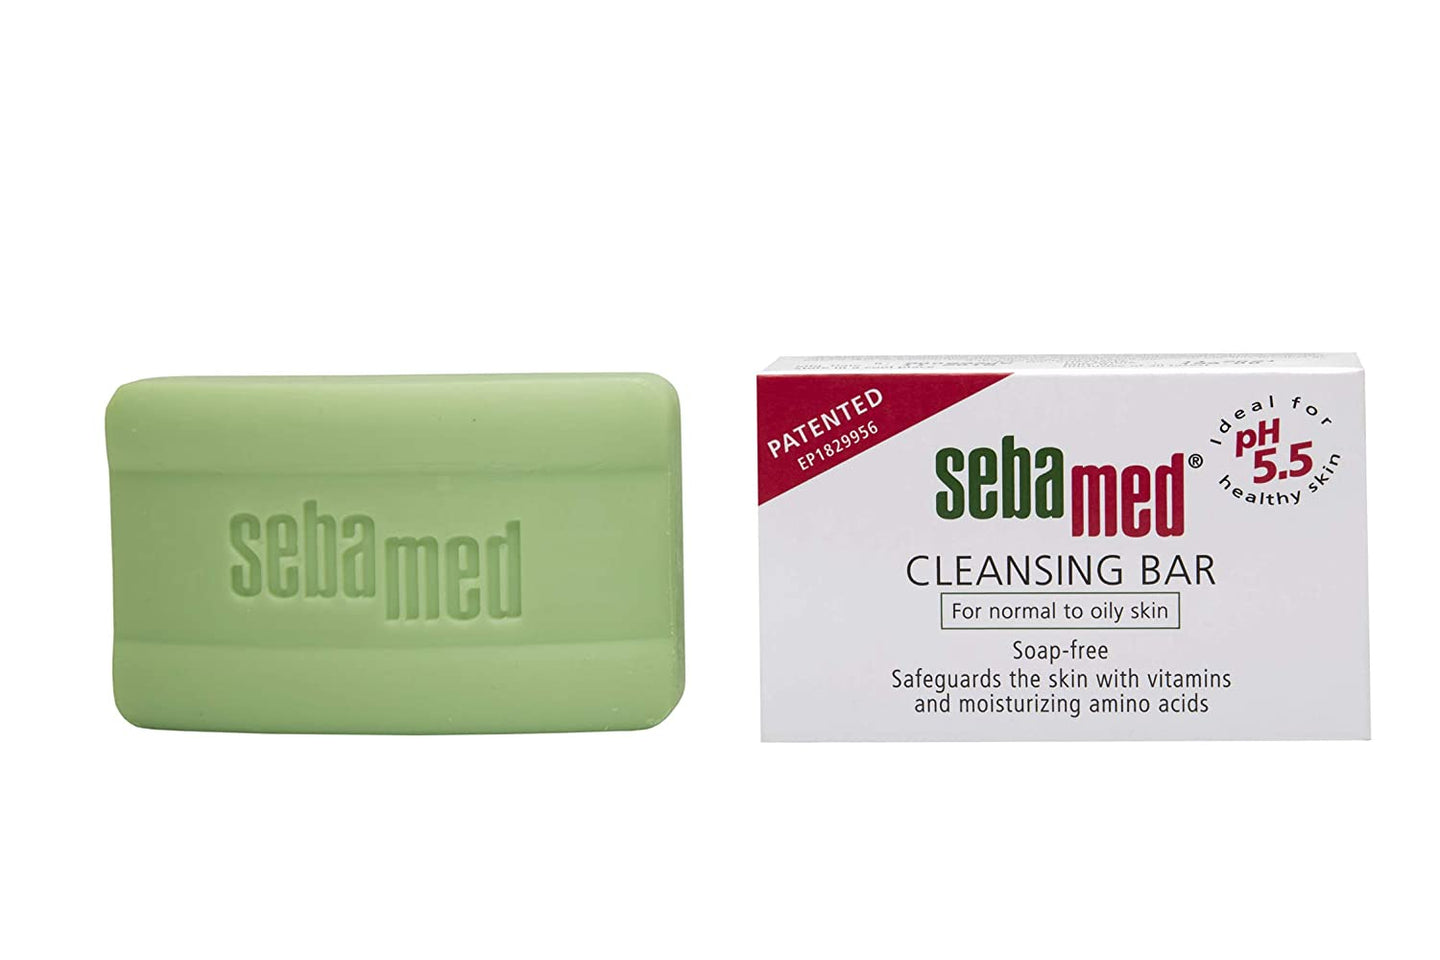 SebaMed Cleansing Bar Soap